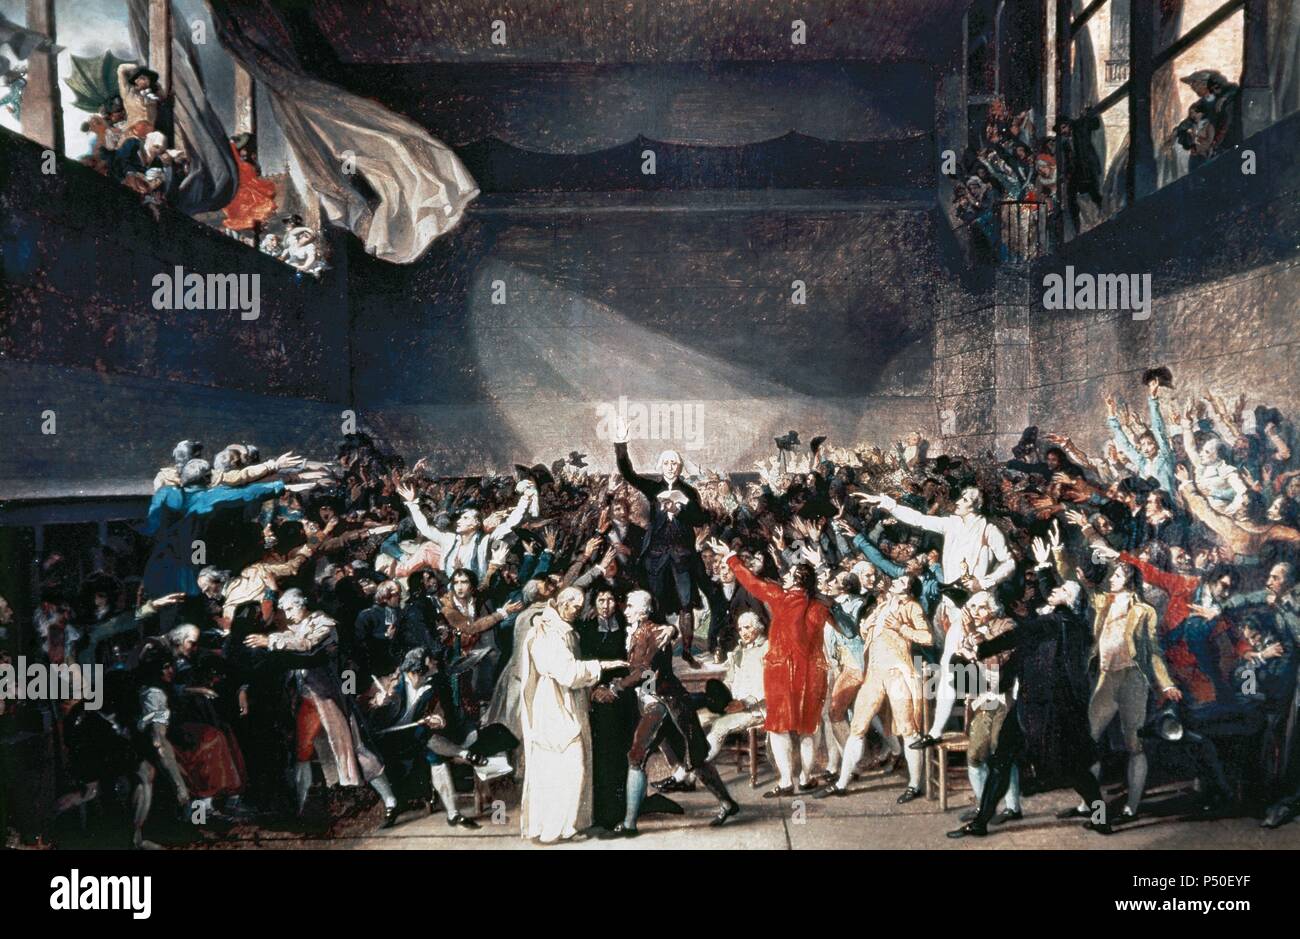 Jacques-Louis David (1748-1825). El pintor francés de estilo neoclásico. La Revolución Francesa. Juramento de la Cancha de tenis (Junio 20, 1789). La pintura. Museo Carnavalet. París. Francia. Foto de stock